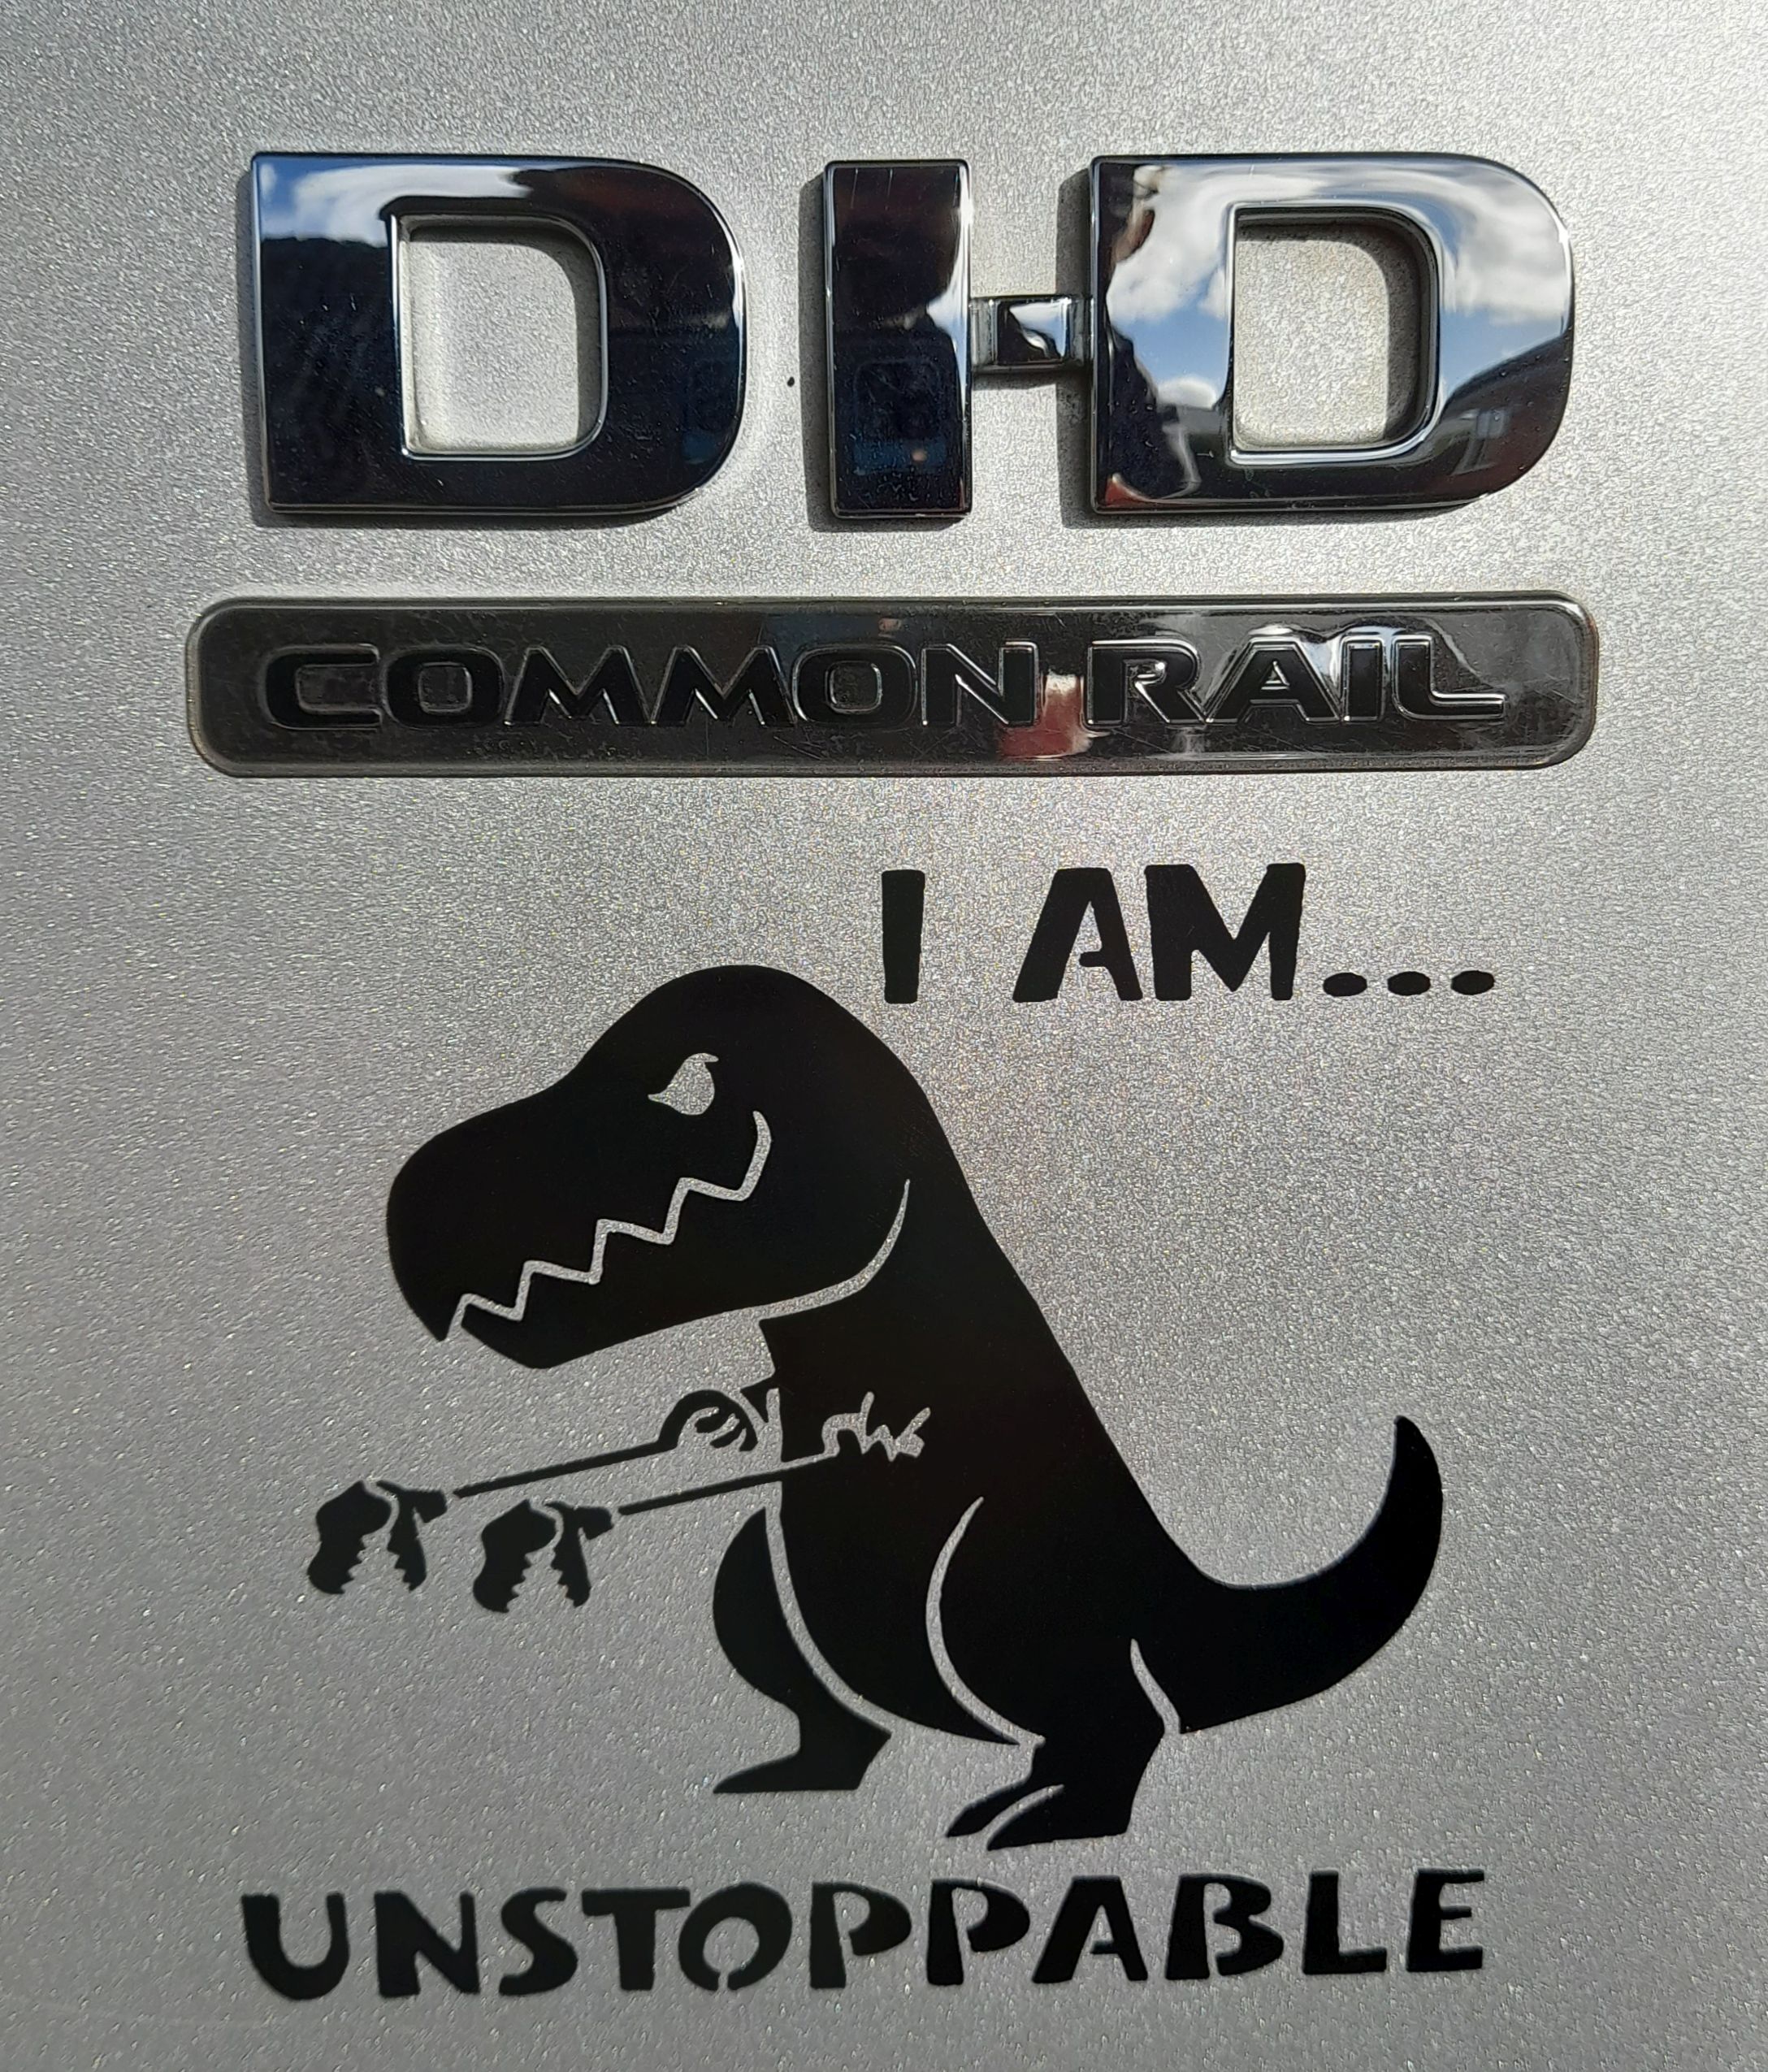 Dino – My ute has a name (finally).